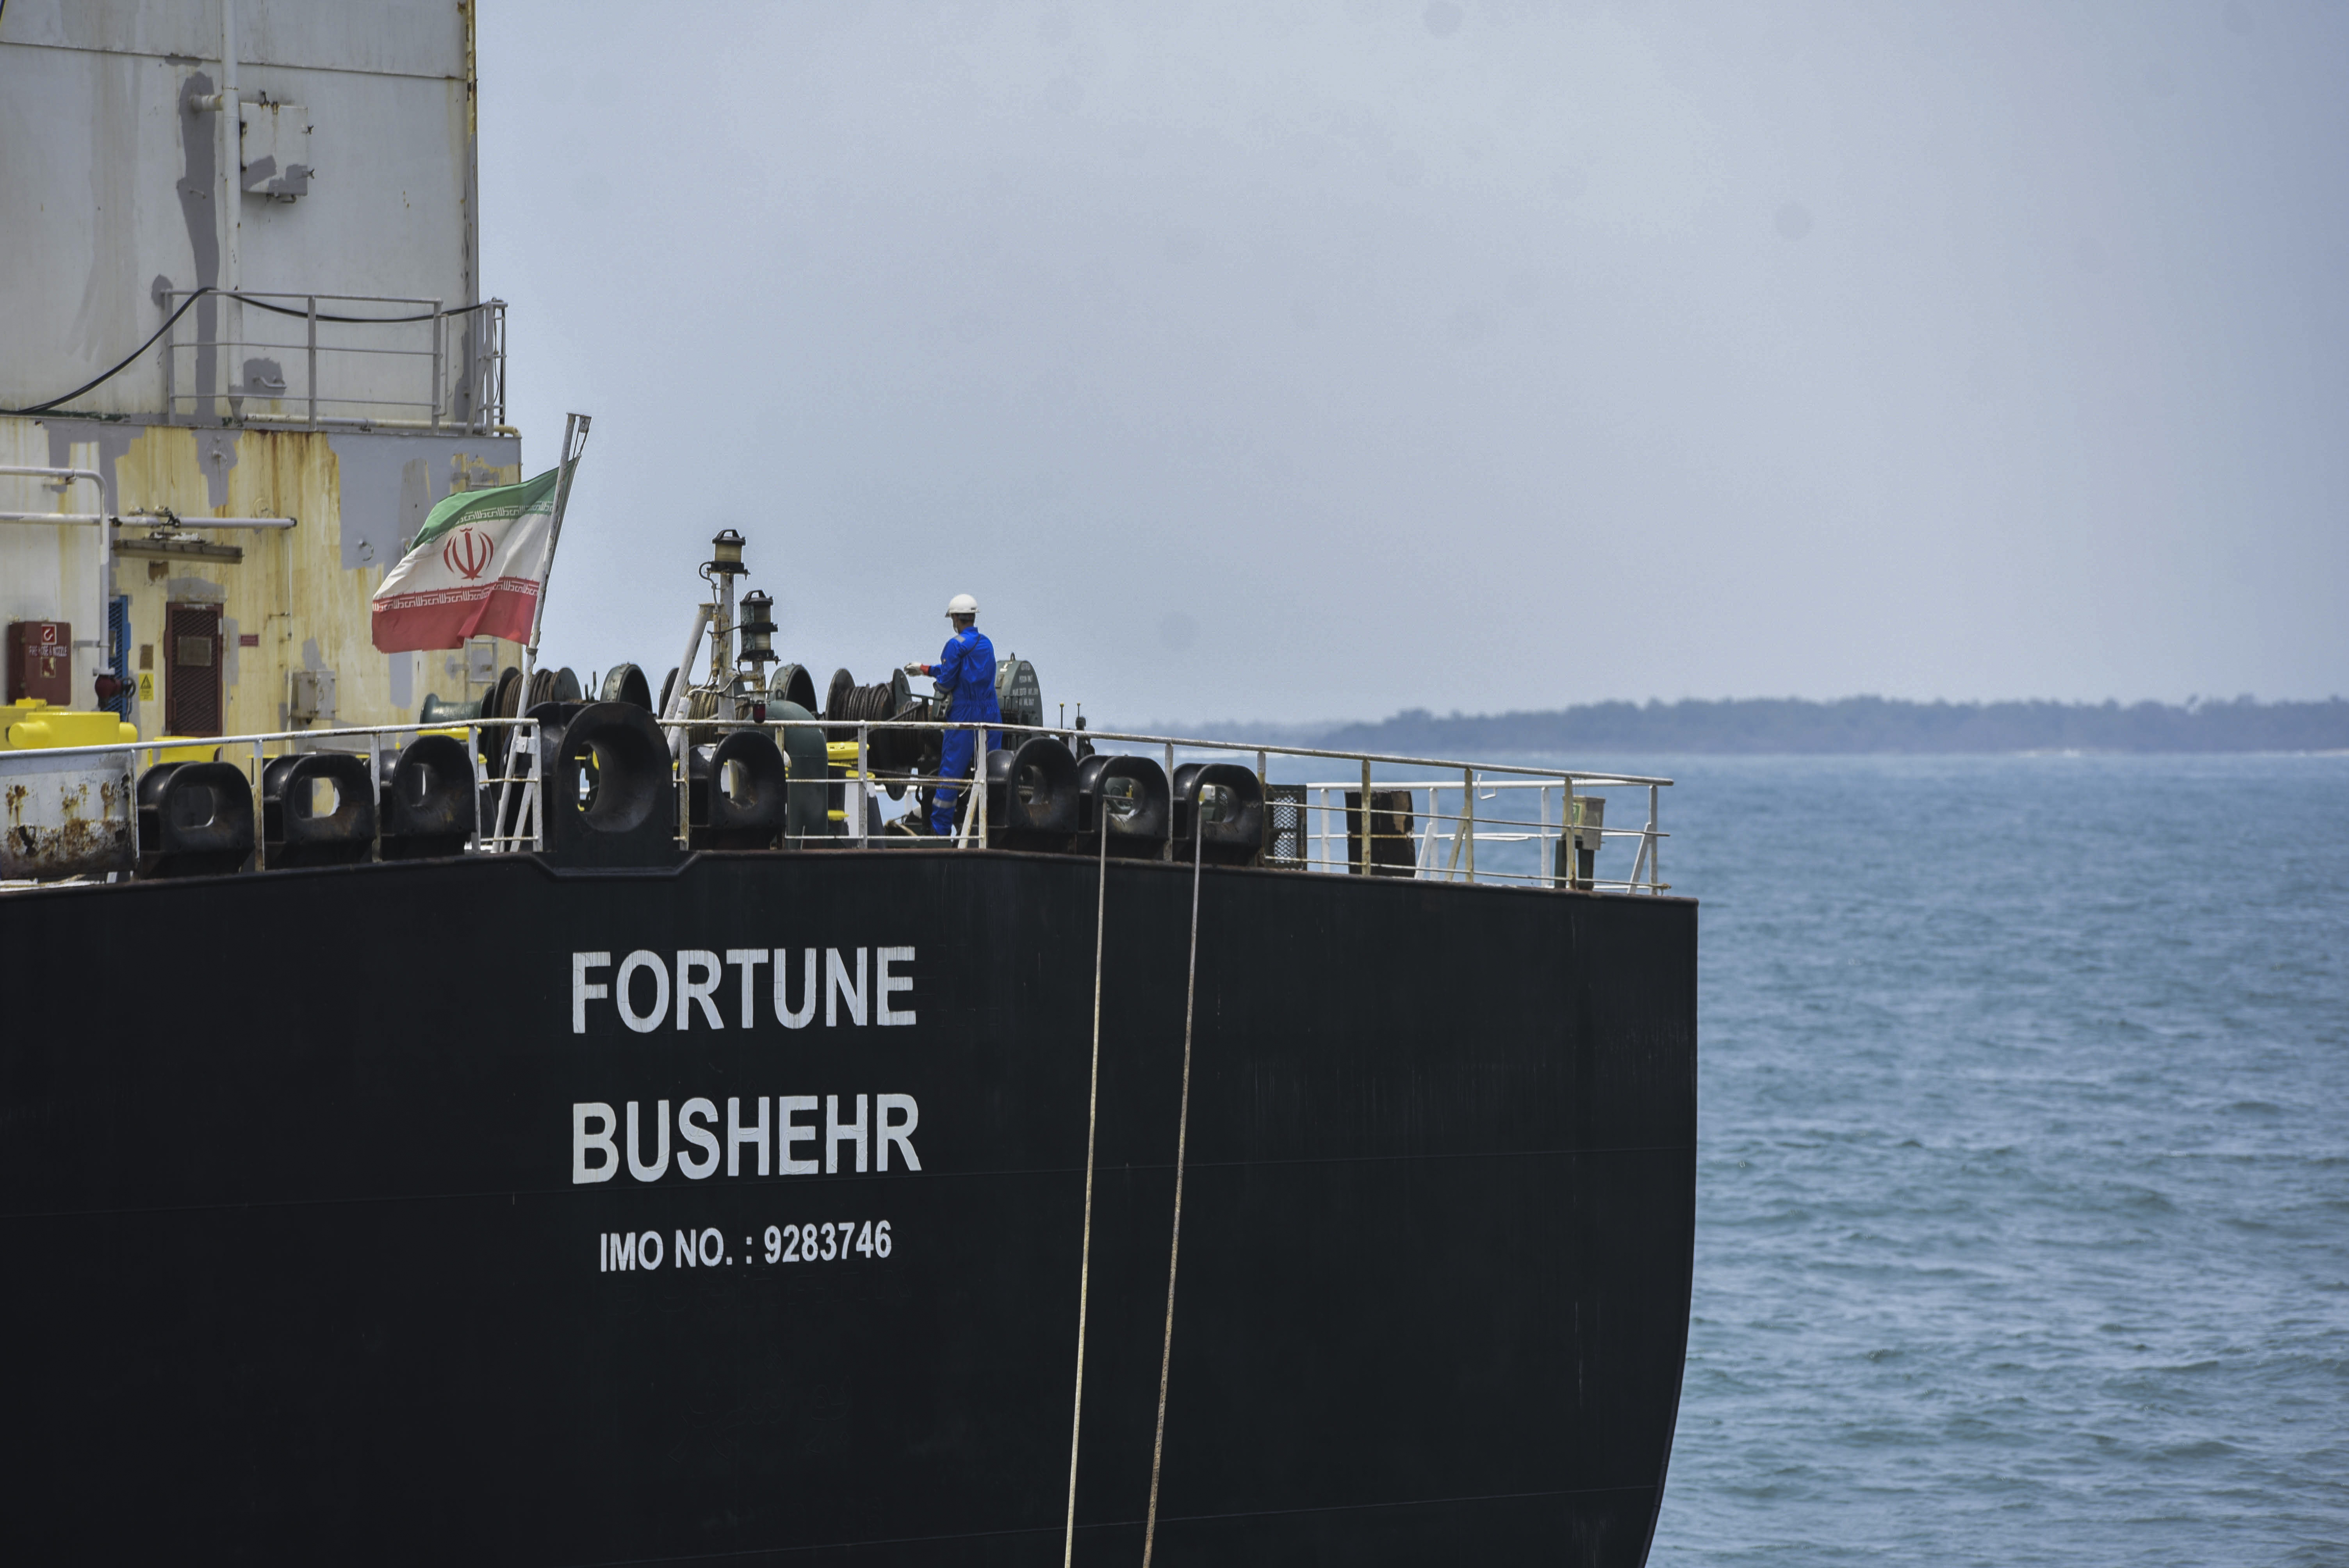 EEUU sanciona a los capitanes de los cinco buques iraníes que transportaron gasolina a Venezuela (VIDEO)